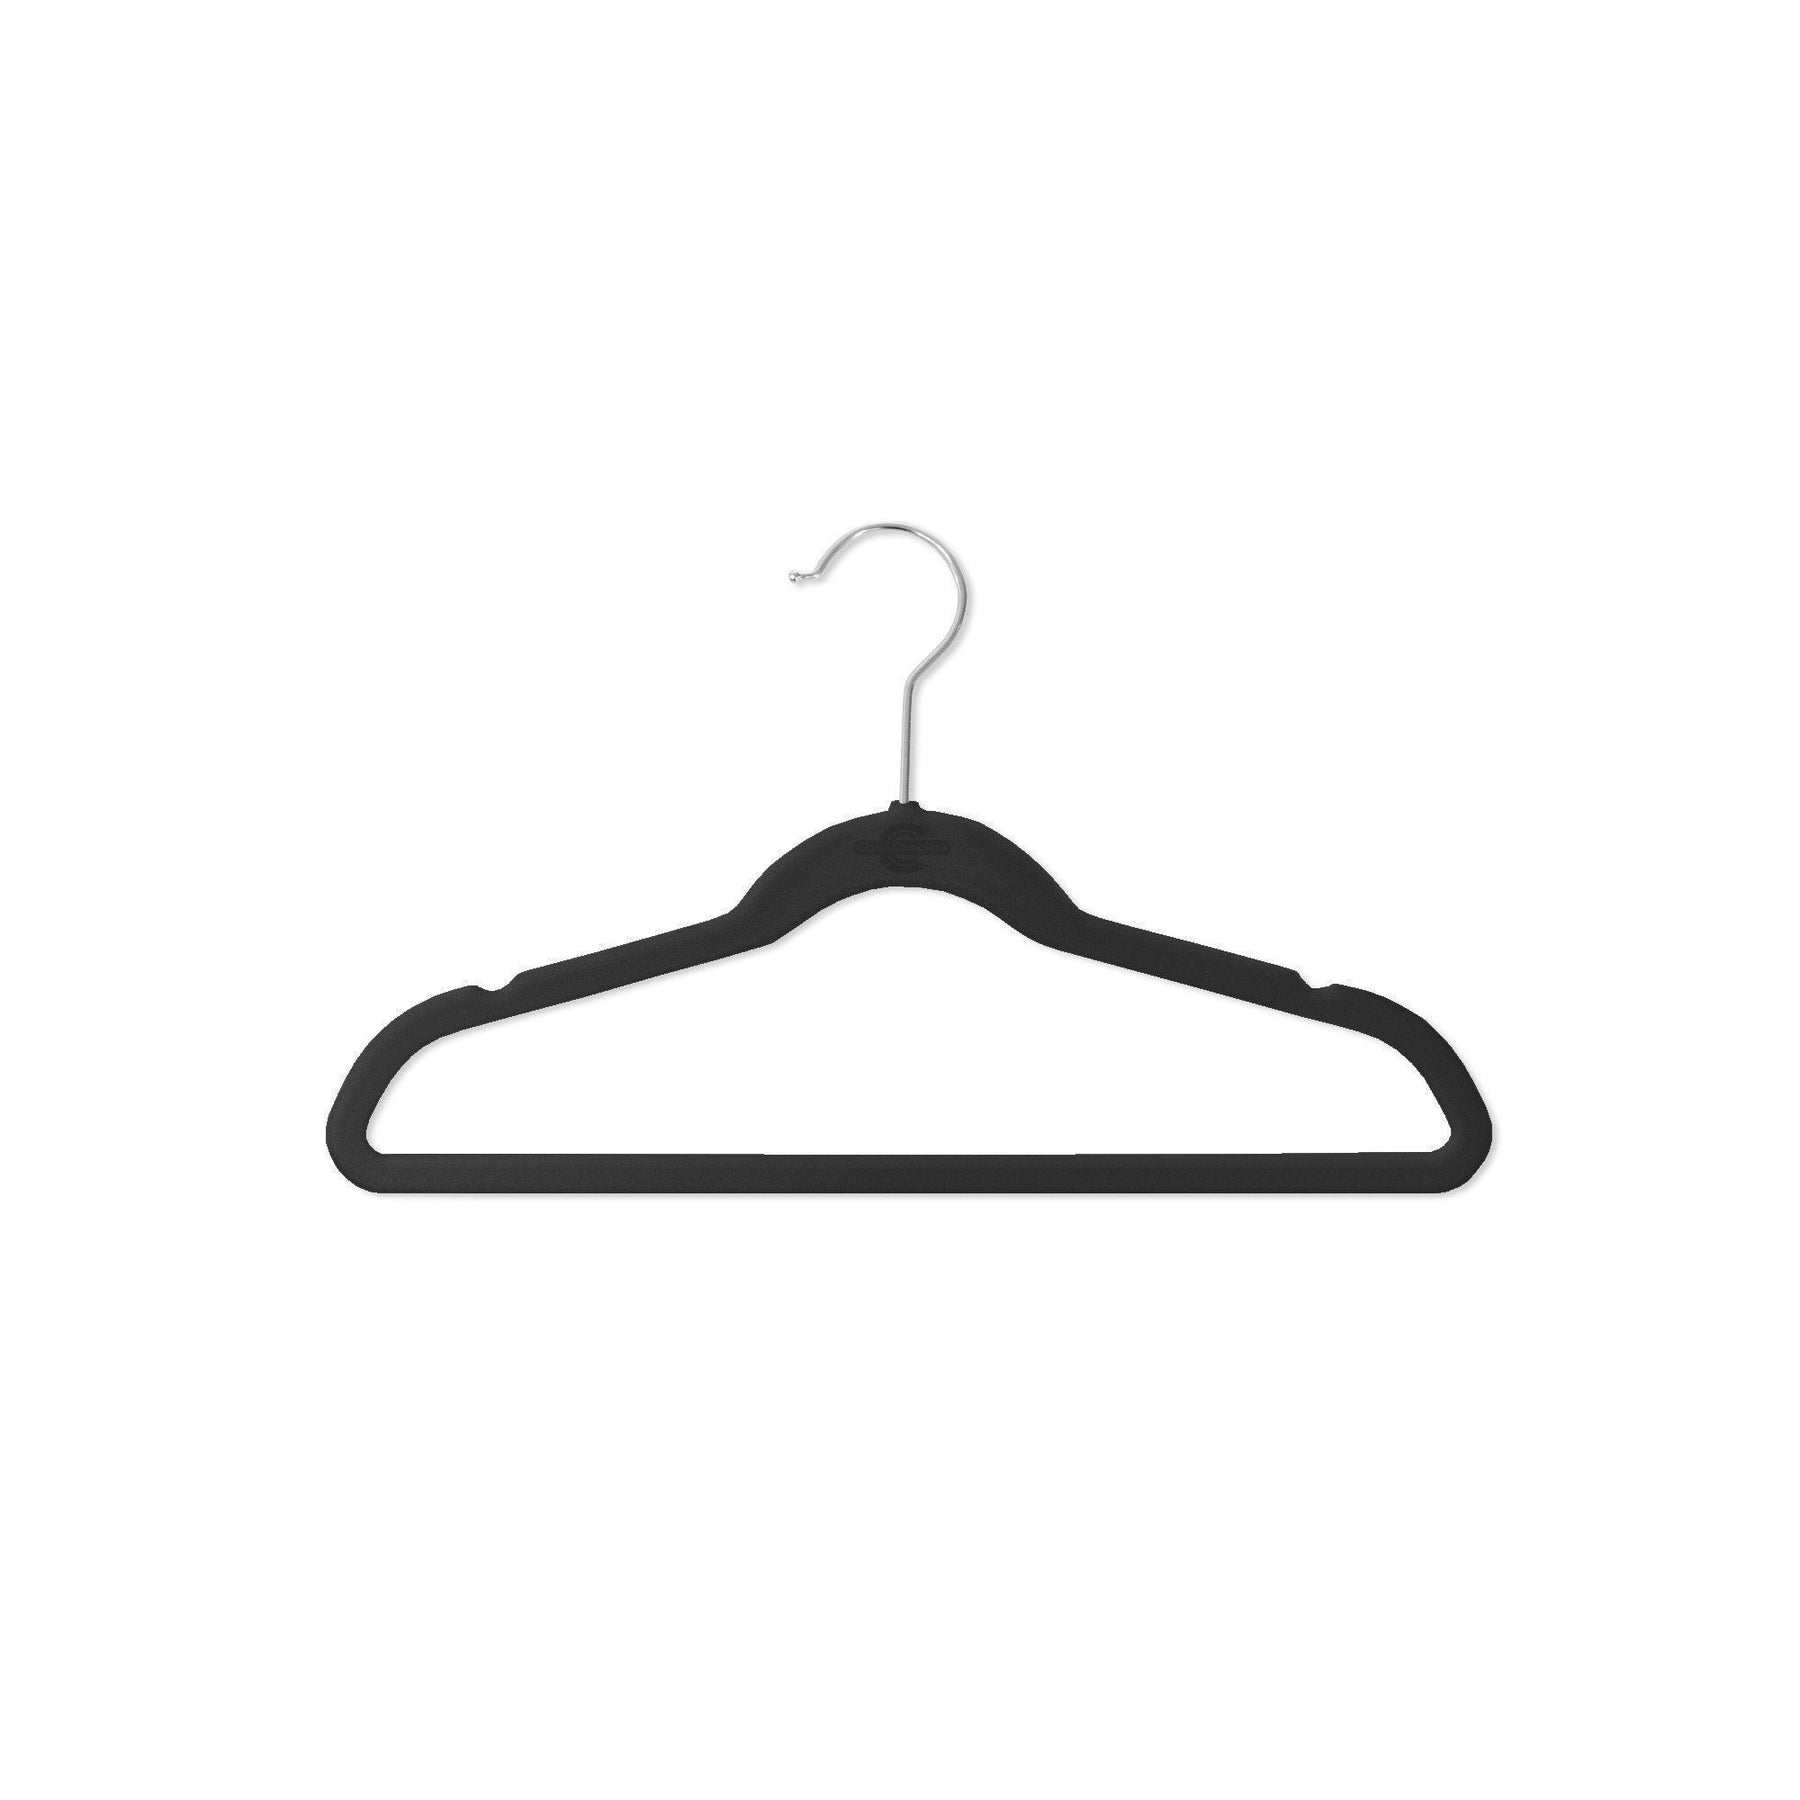 Kids Sized Premium Velvet Hangers  Perfectly Sized Hangers for Kids –